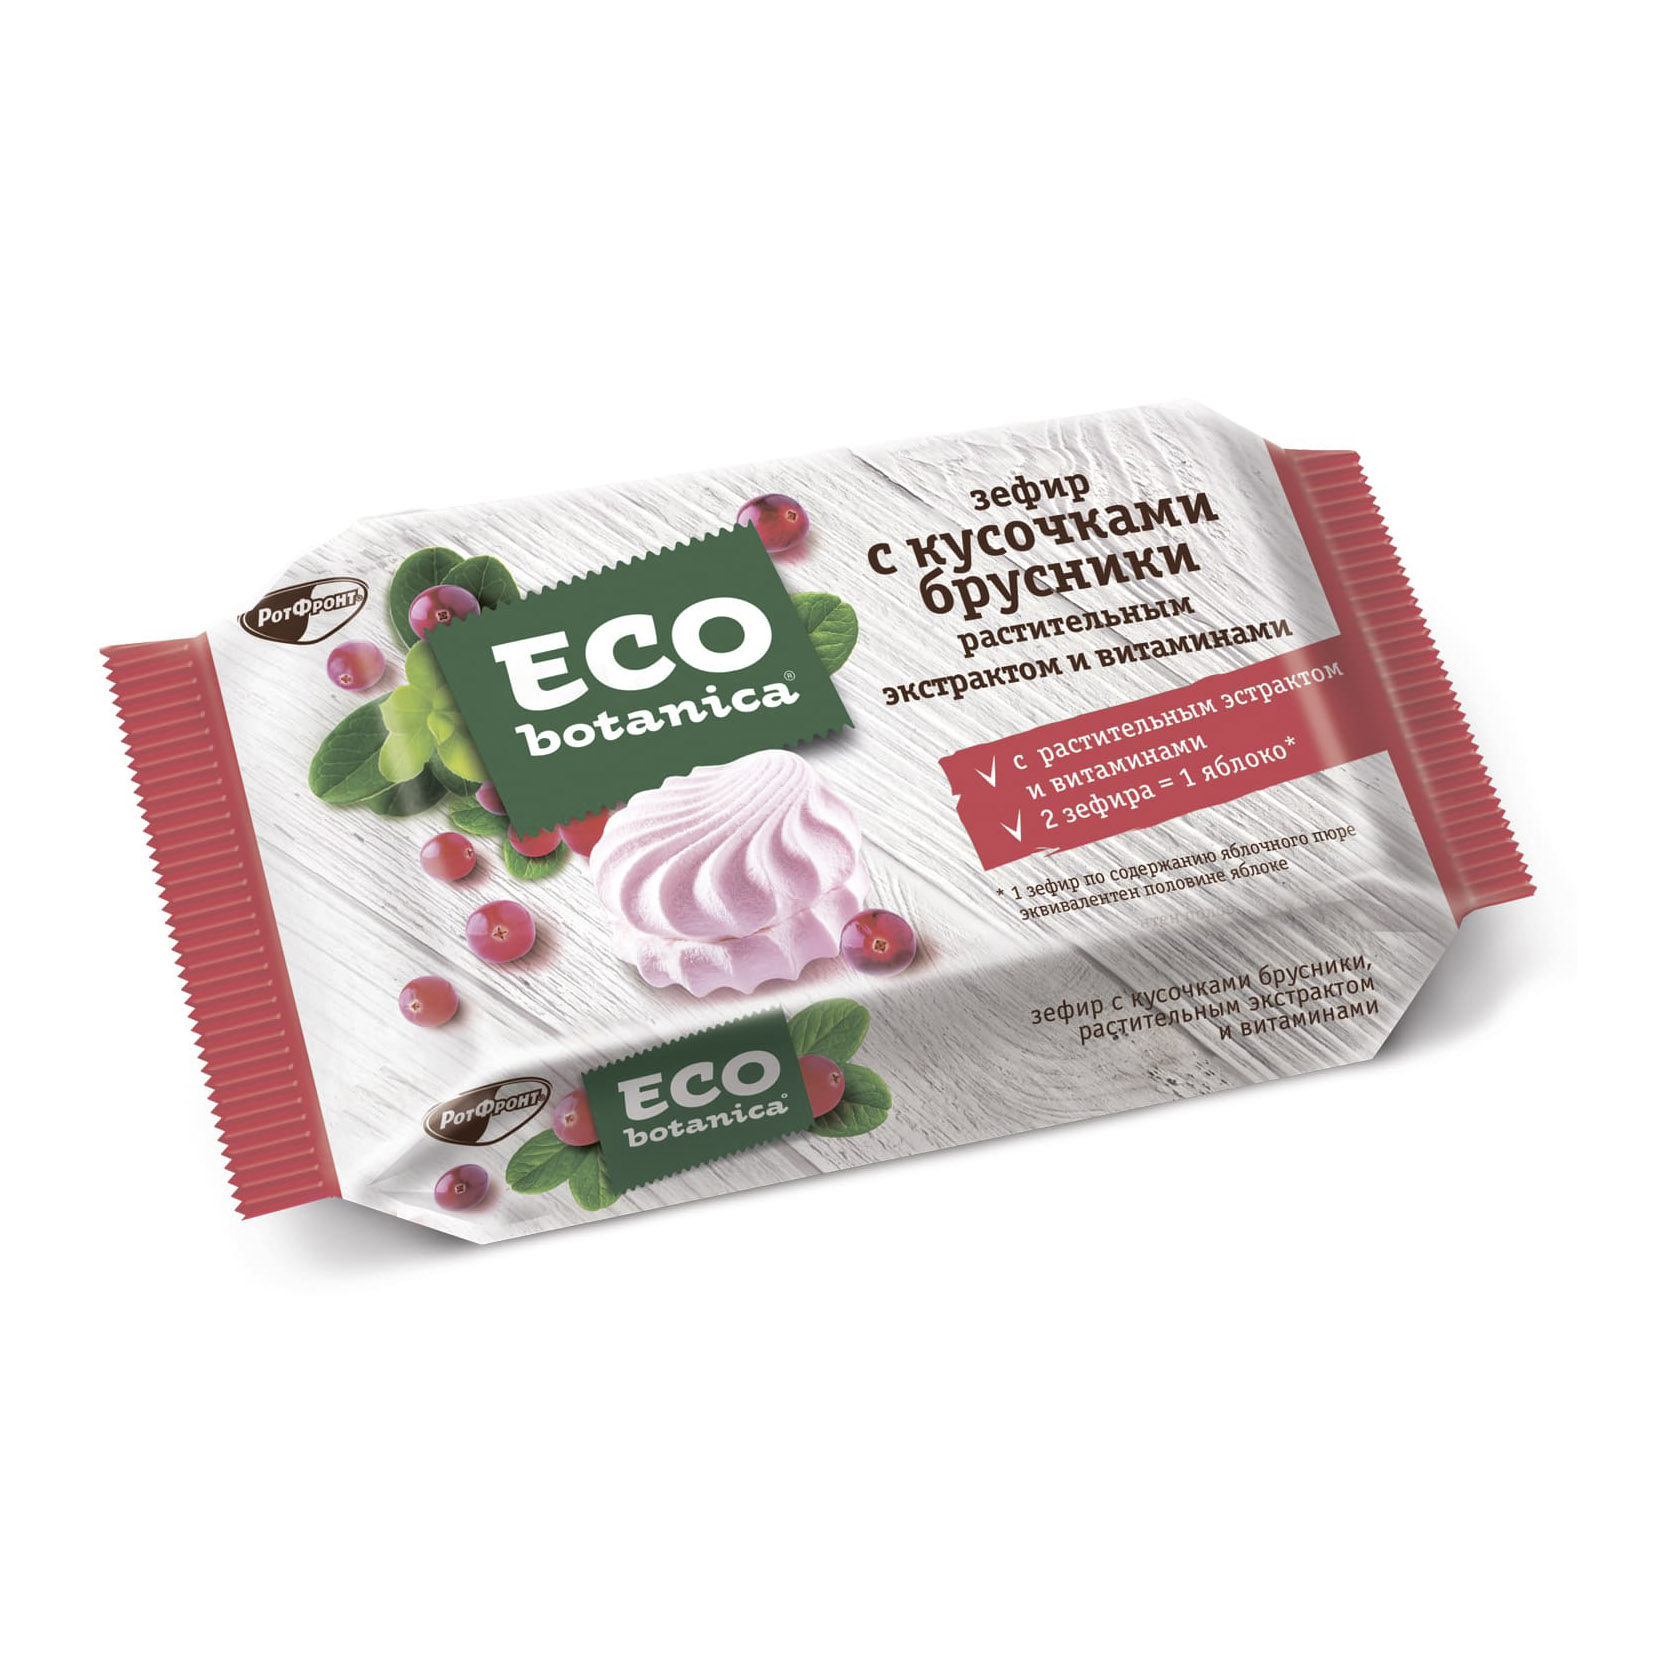 Зефир Eco Botanica с кусочками брусники, растительным экстрактом и витаминами 250 г цена и фото